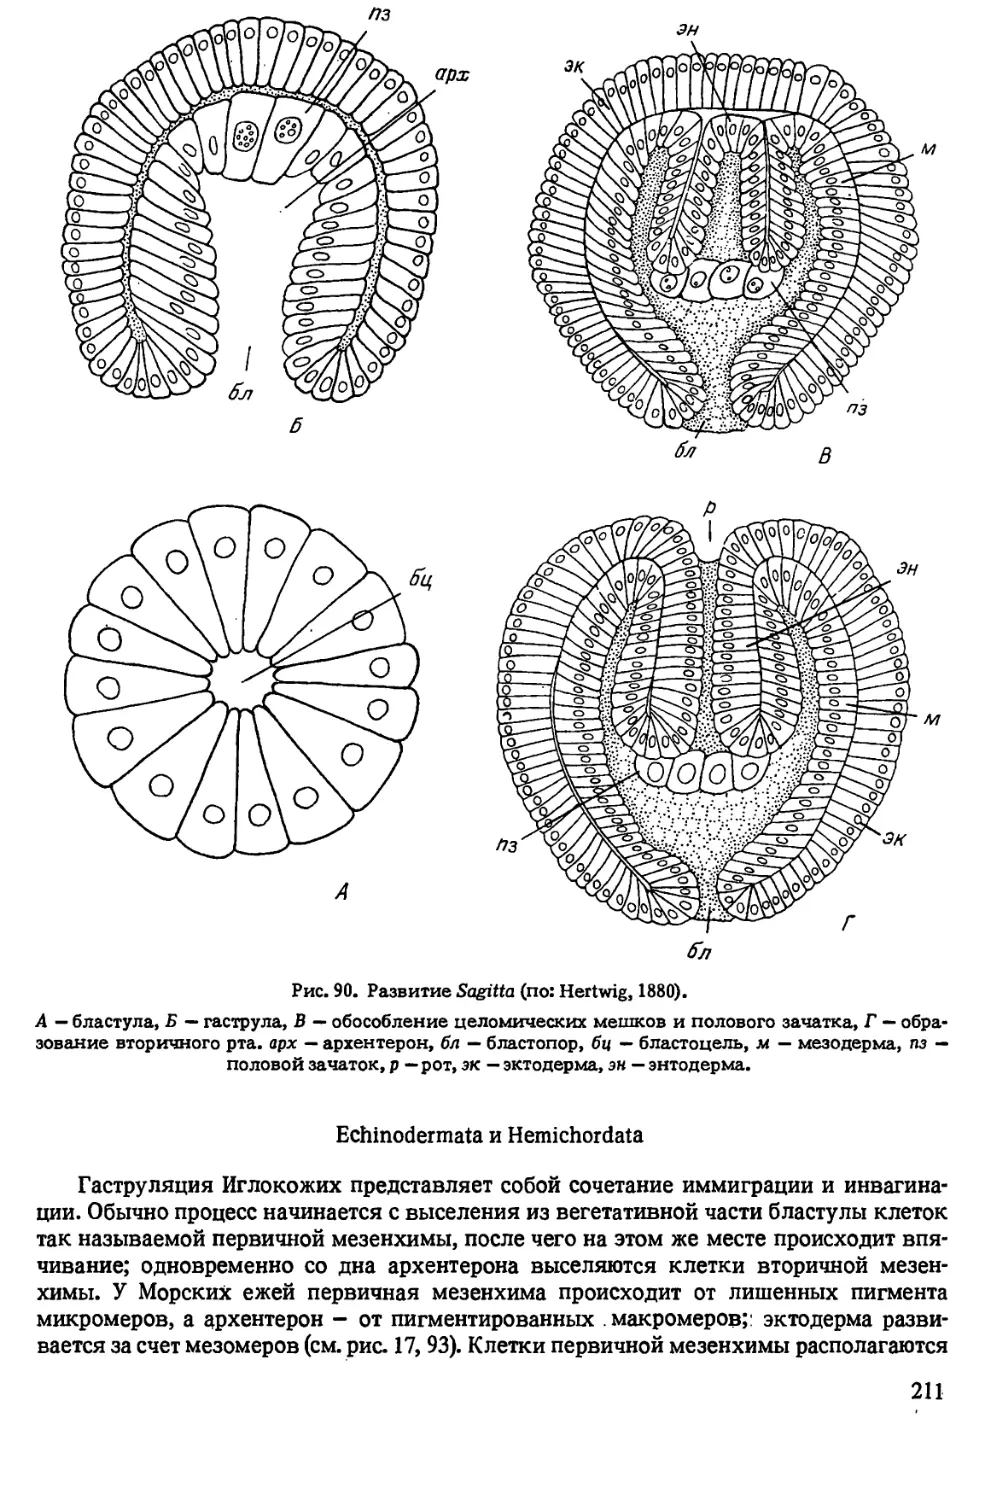 Echinodermata и Hemichordata